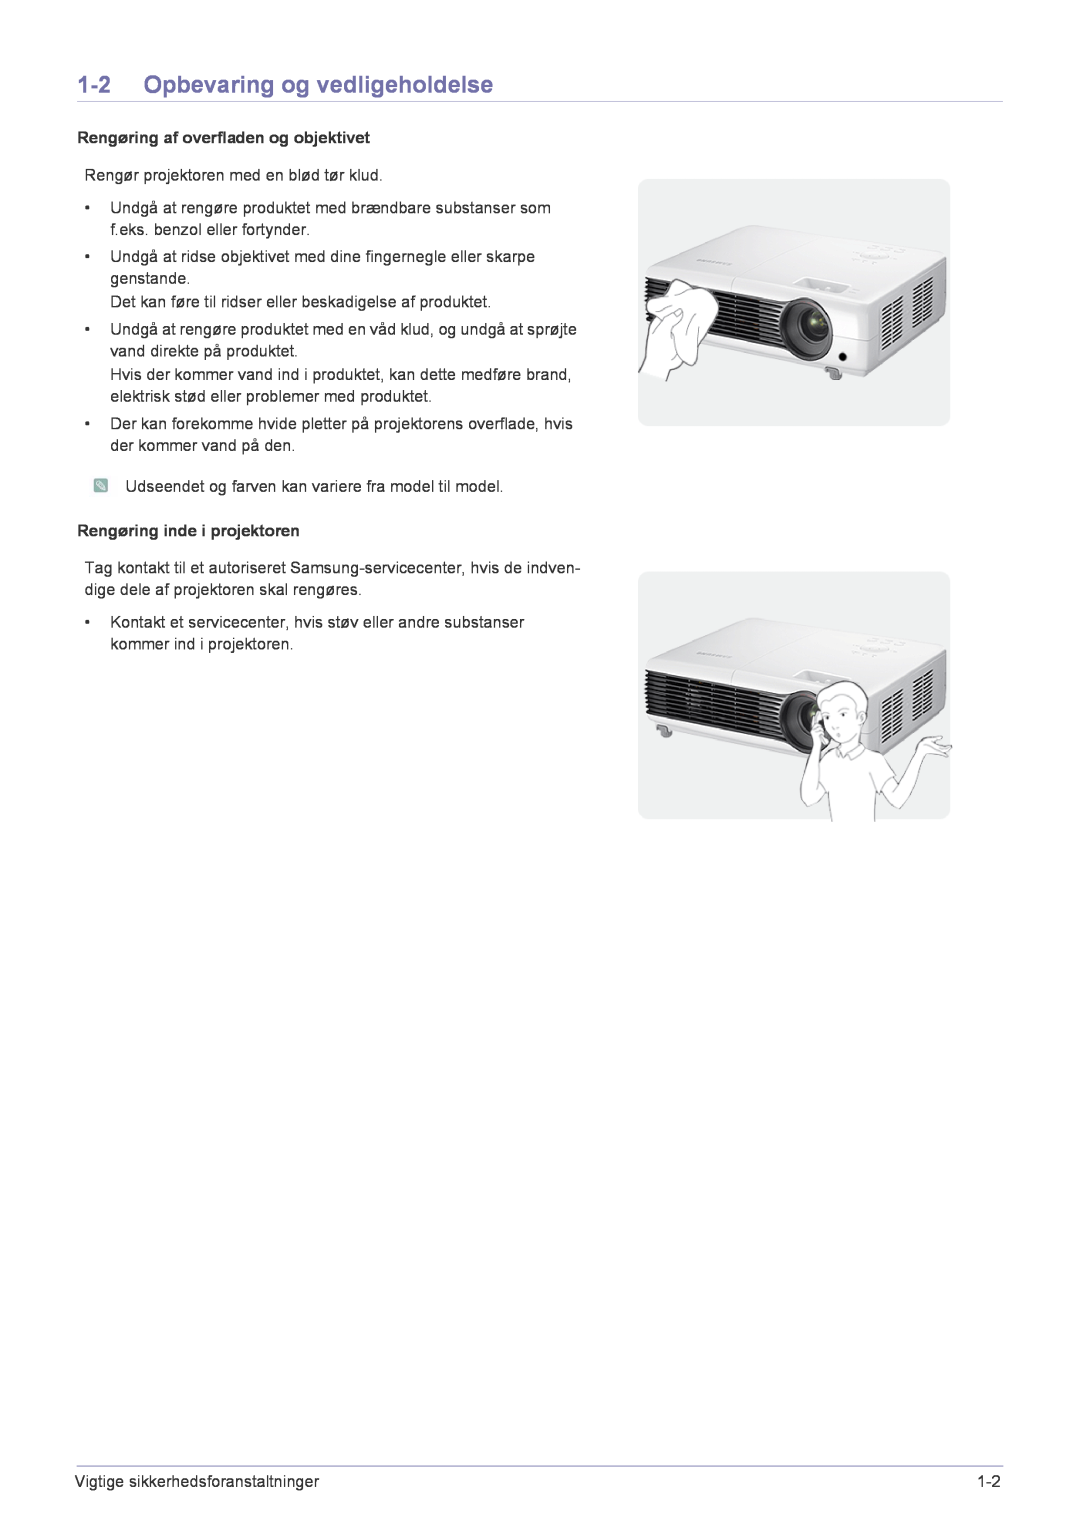 Samsung SP2553XWCX/EN Opbevaring og vedligeholdelse, Rengøring af overfladen og objektivet, Rengøring inde i projektoren 